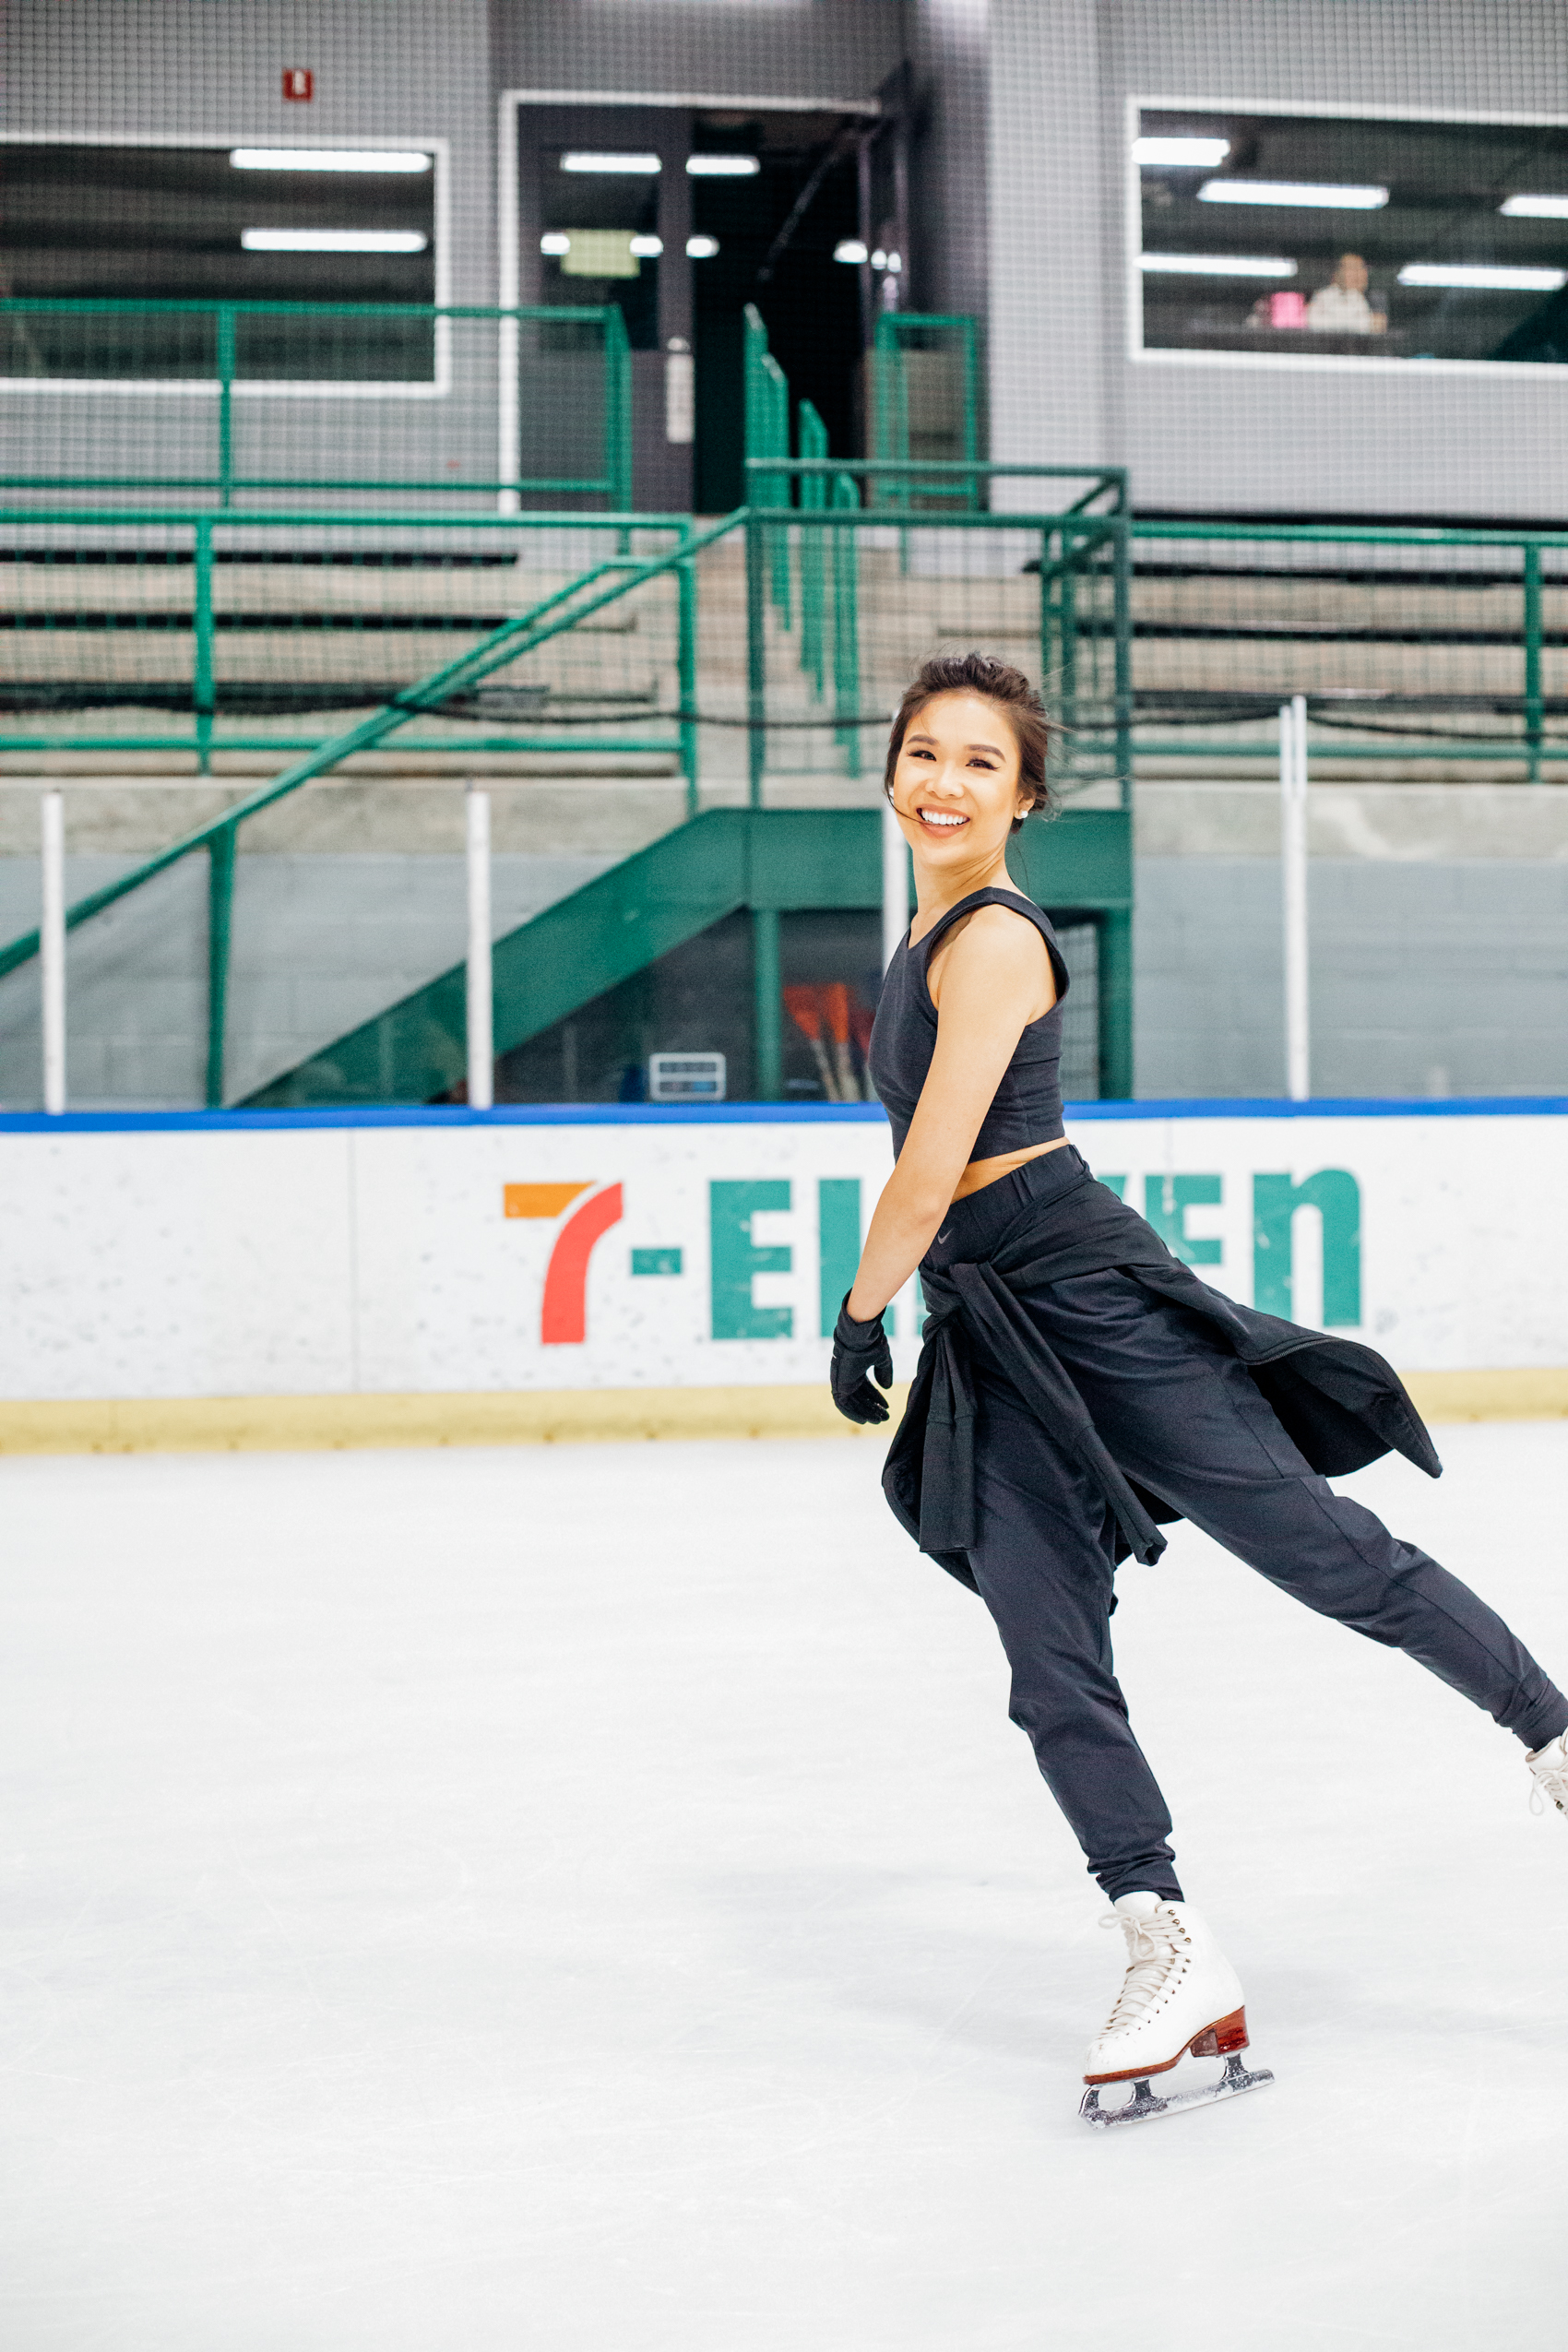 Blogger Hoang-Kim goes ice skating in Dallas, Texas